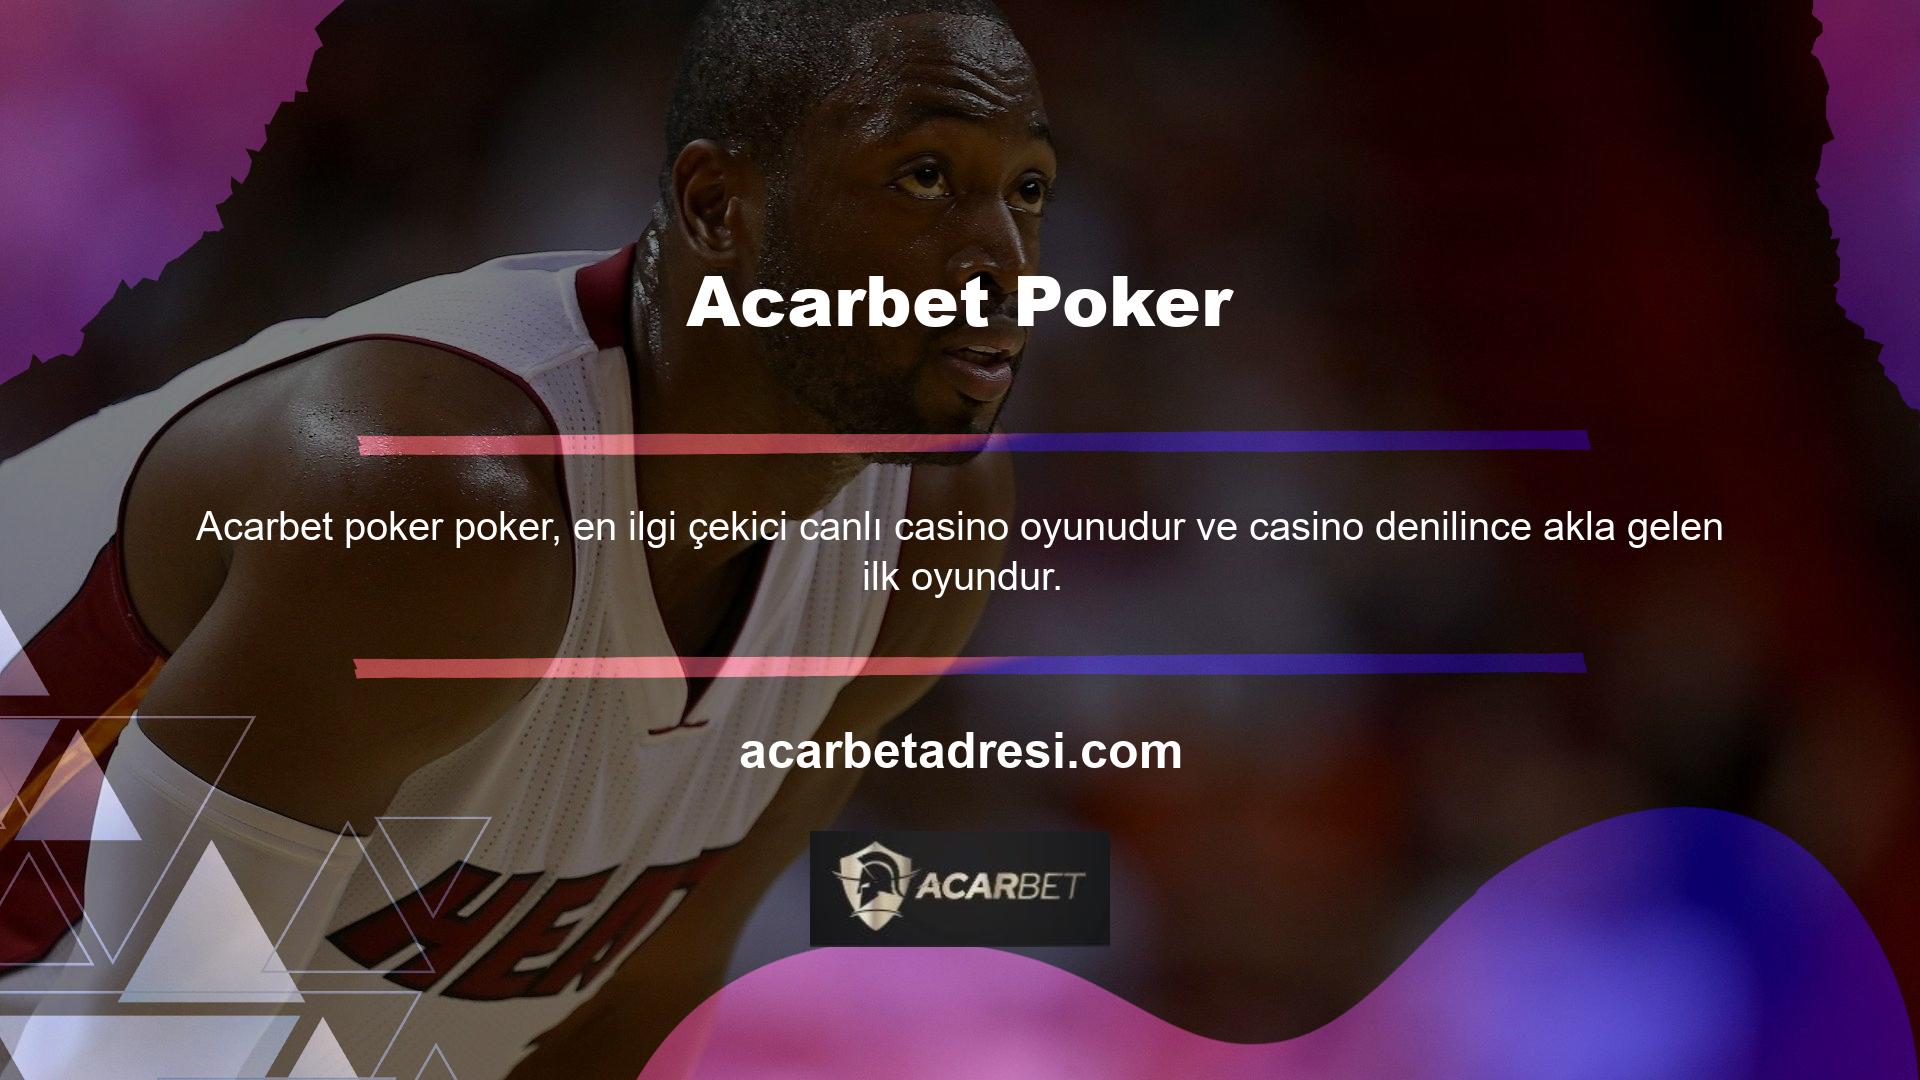 Acarbet Poker kategorisinde Texas Hold'em Poker, Omaha Hold'em Poker, Turkish Poker veya Closed Poker oynayabilir ve büyük kazanmak için canlı poker masalarında poker bilginizi test edebilirsiniz